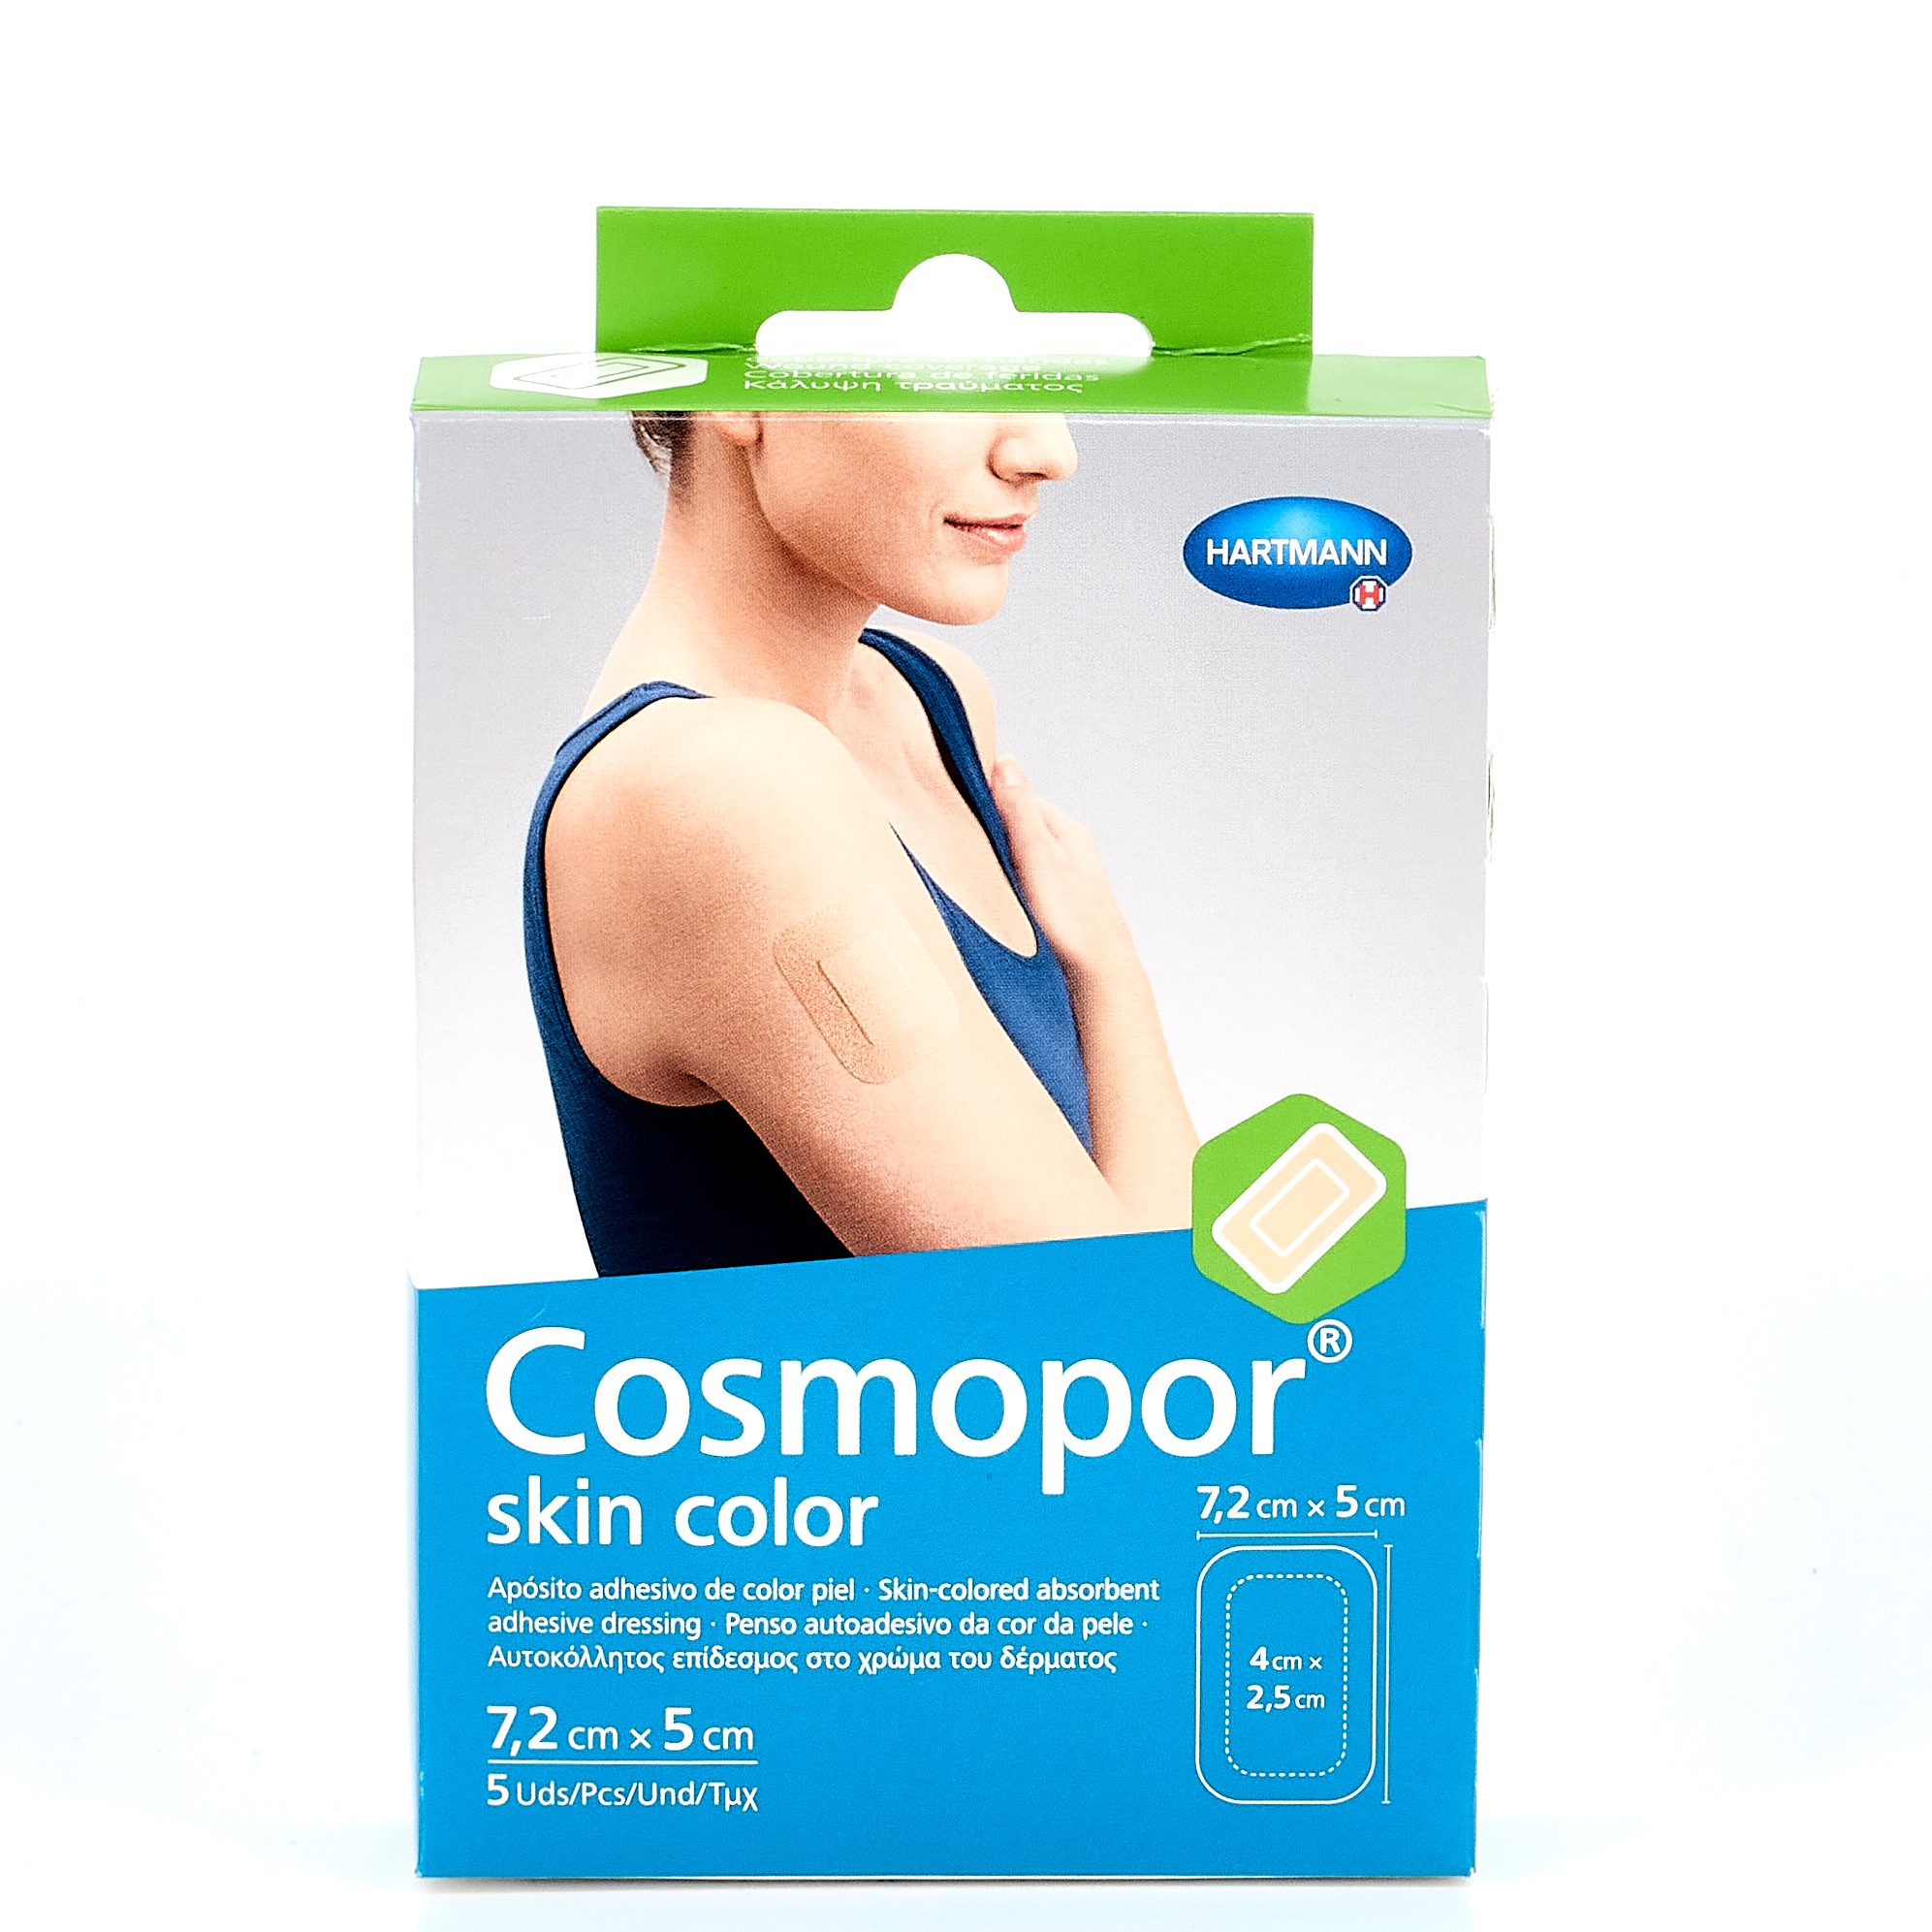 Cosmopor Skin Color Aposito Esteril 7.2x5 cm, 5 Uds.